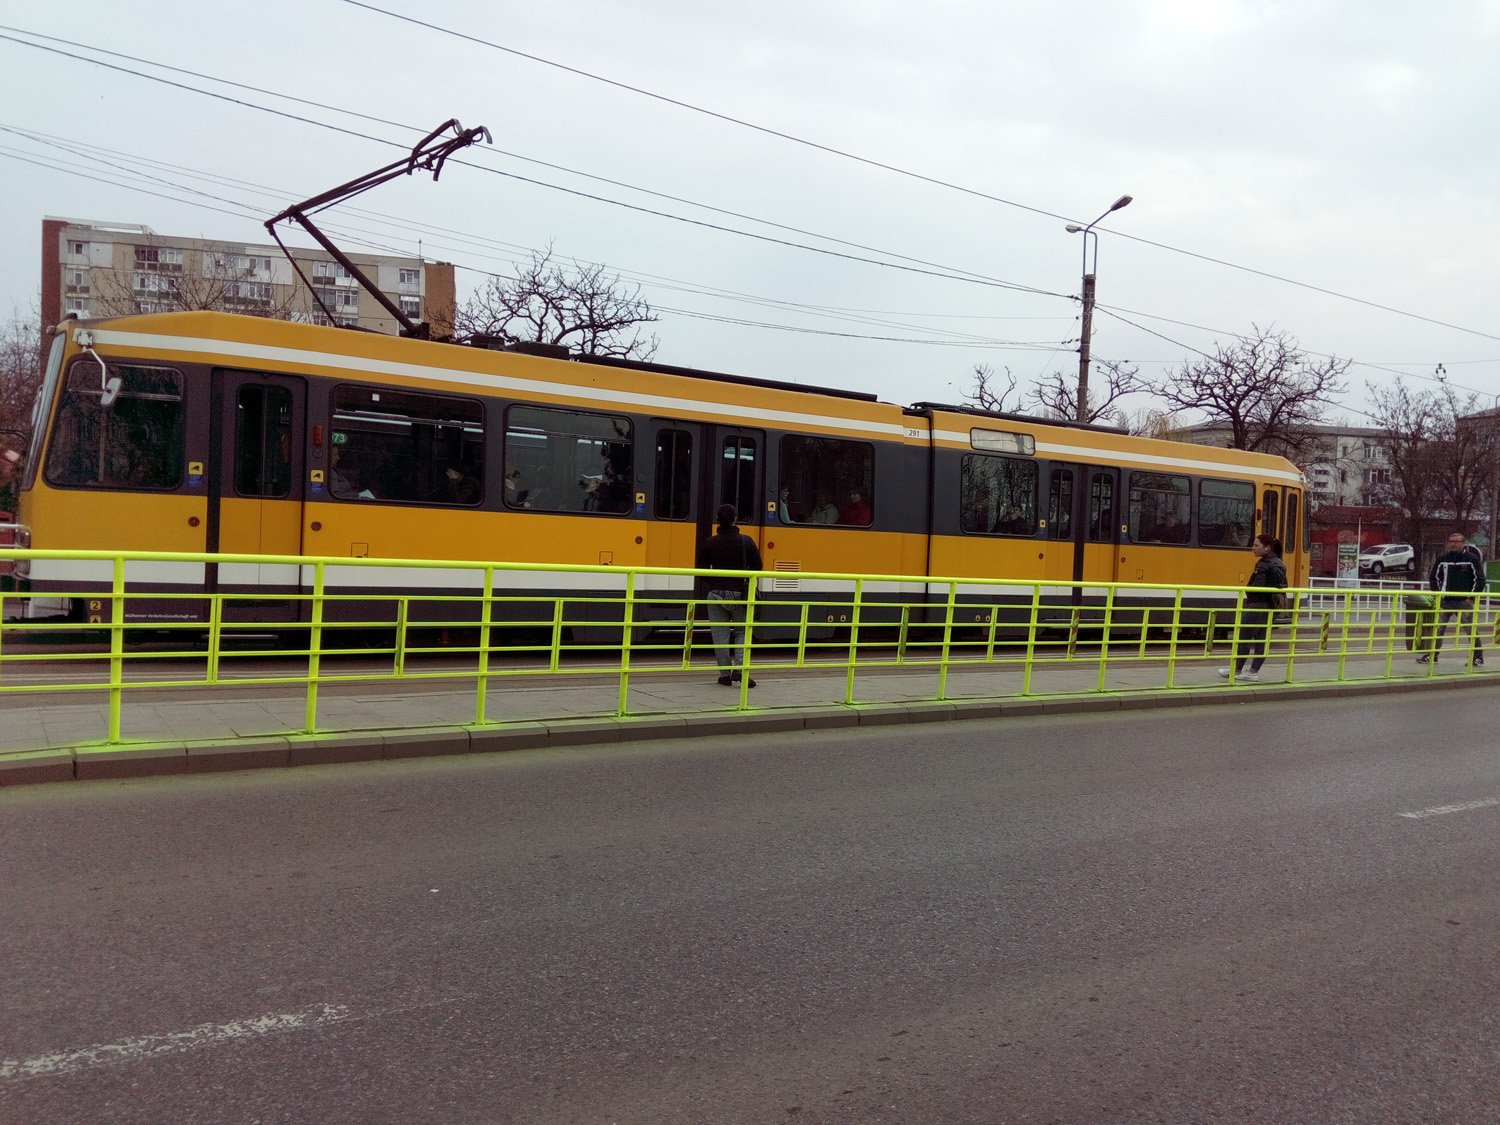  FOTO: Balustradele refugiilor de tramvai din Iași, vopsite fosforescent